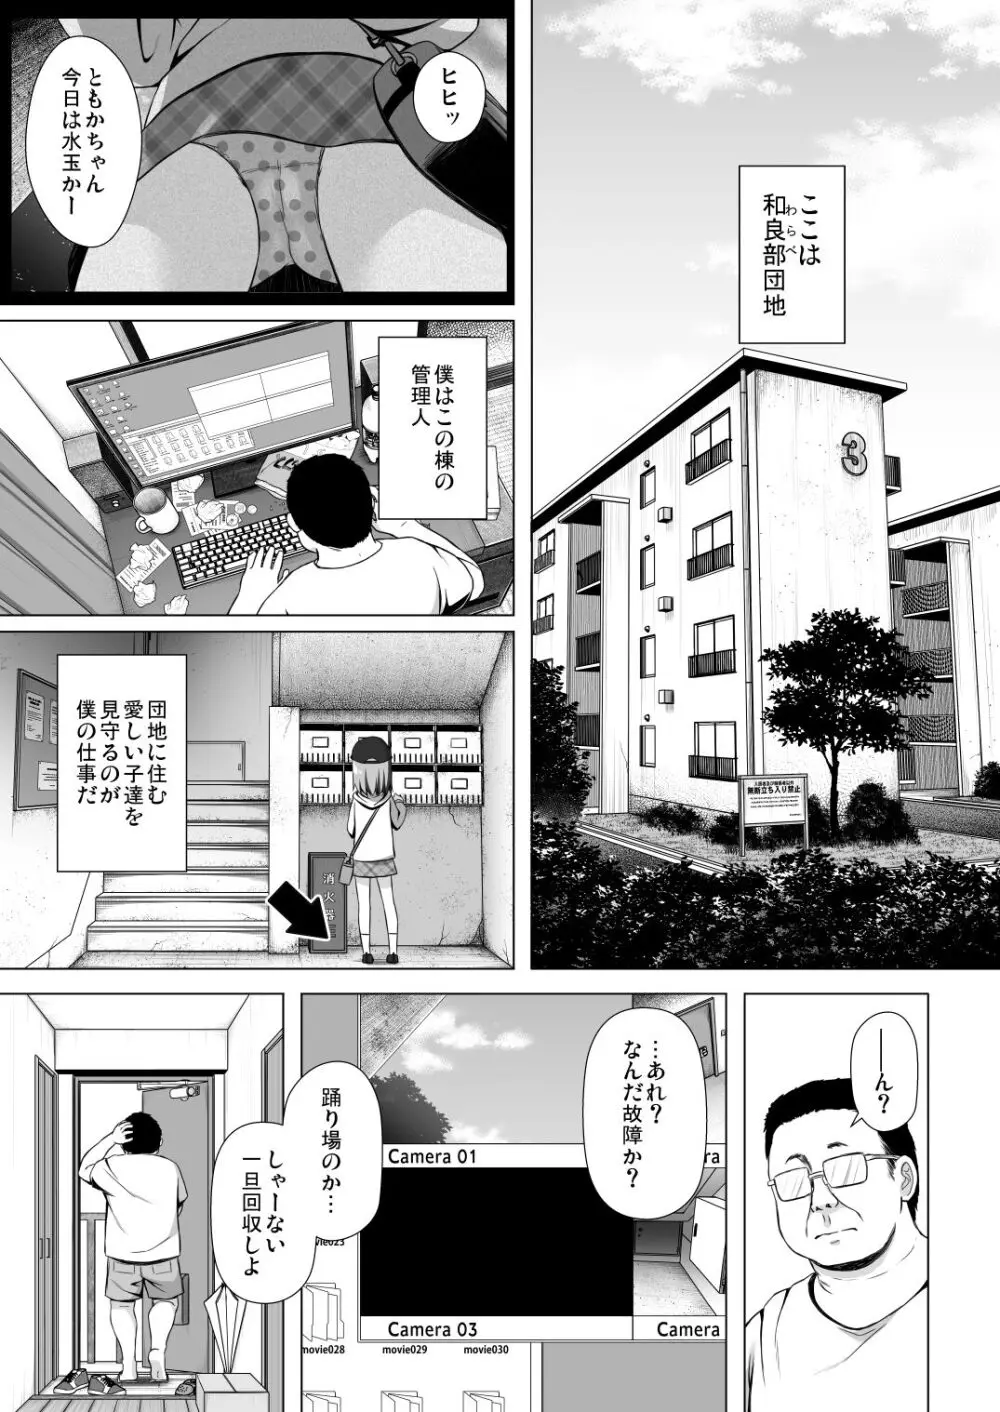 わらべ団地のいちごちゃん - page2